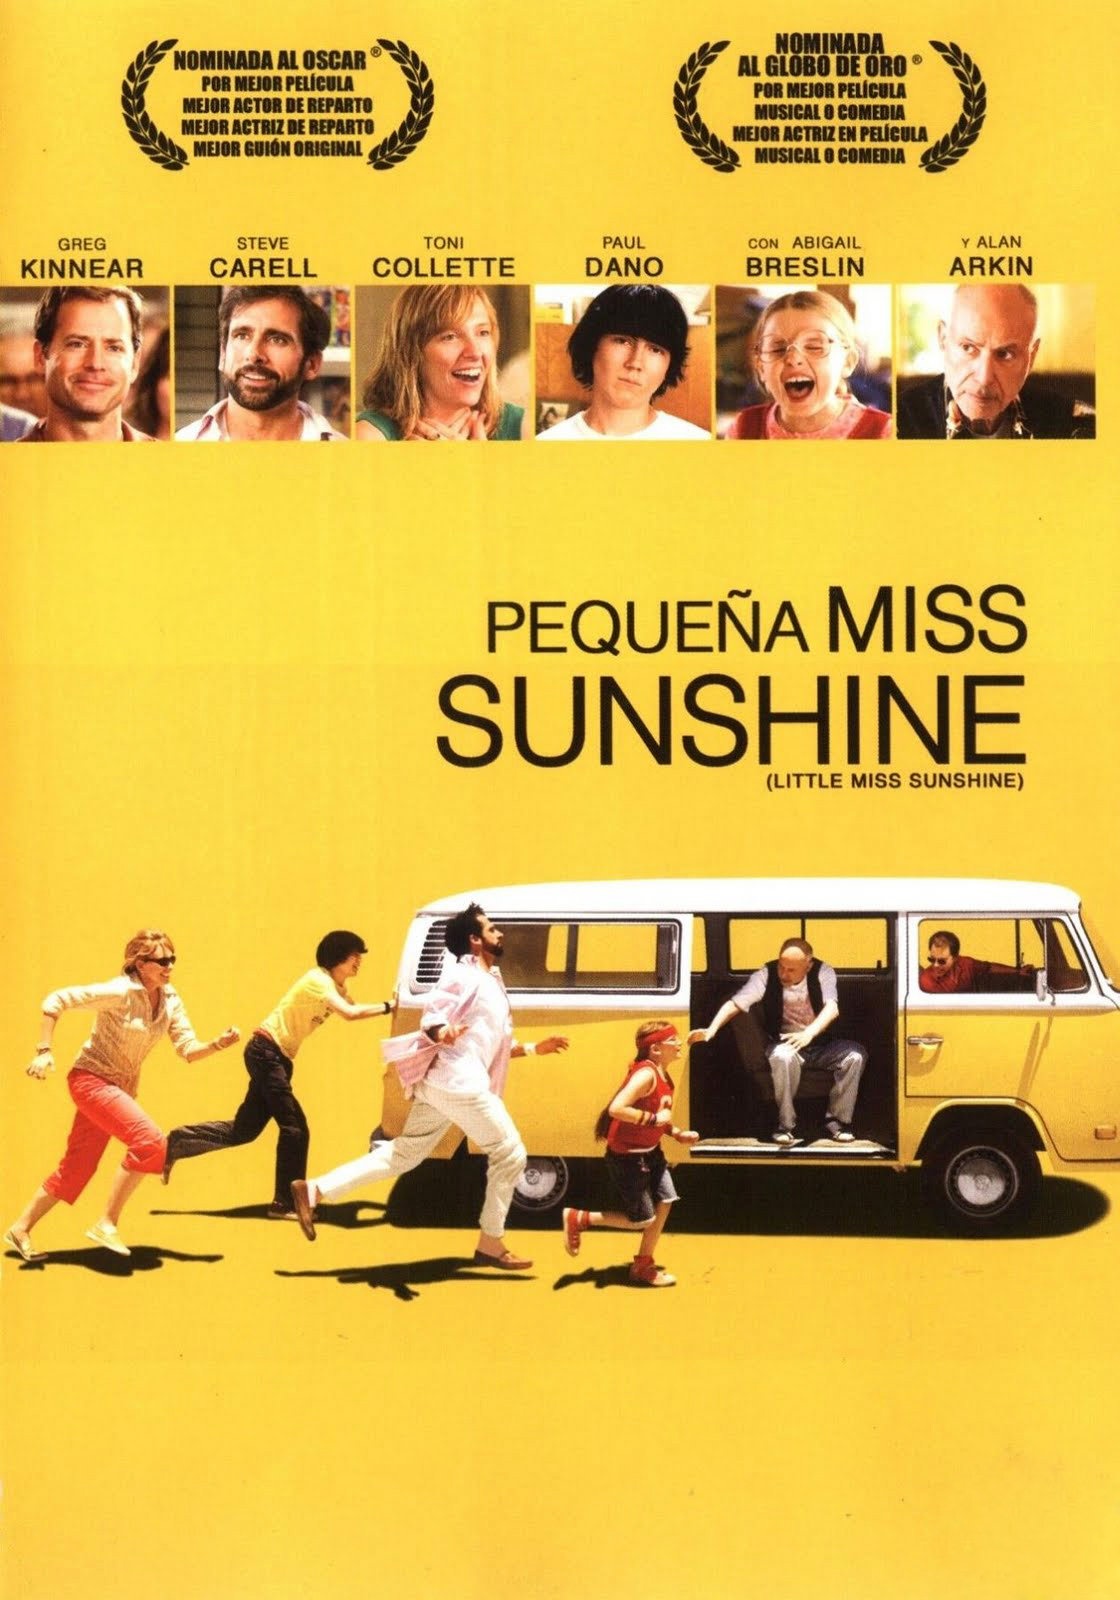 ดูหนัง Little Miss Sunshine (2006) ลิตเติ้ล มิสซันไชน์ นางงามตัวน้อย ร้อยสายใยรัก